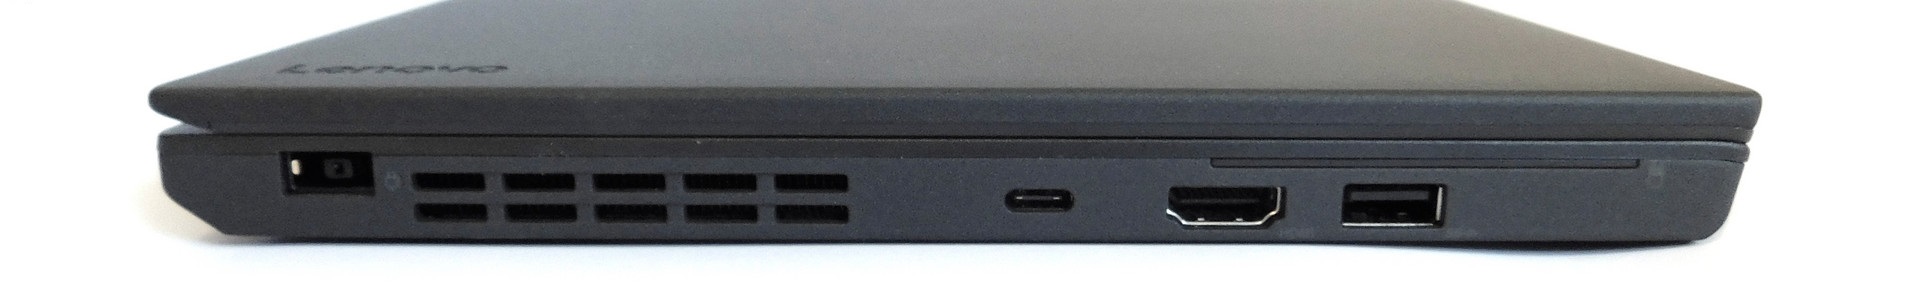 Đánh giá Laptop Lenovo ThinkPad X270: Nhỏ gọn, Mạnh mẽ, Chuyên trang tư vấn Laptop